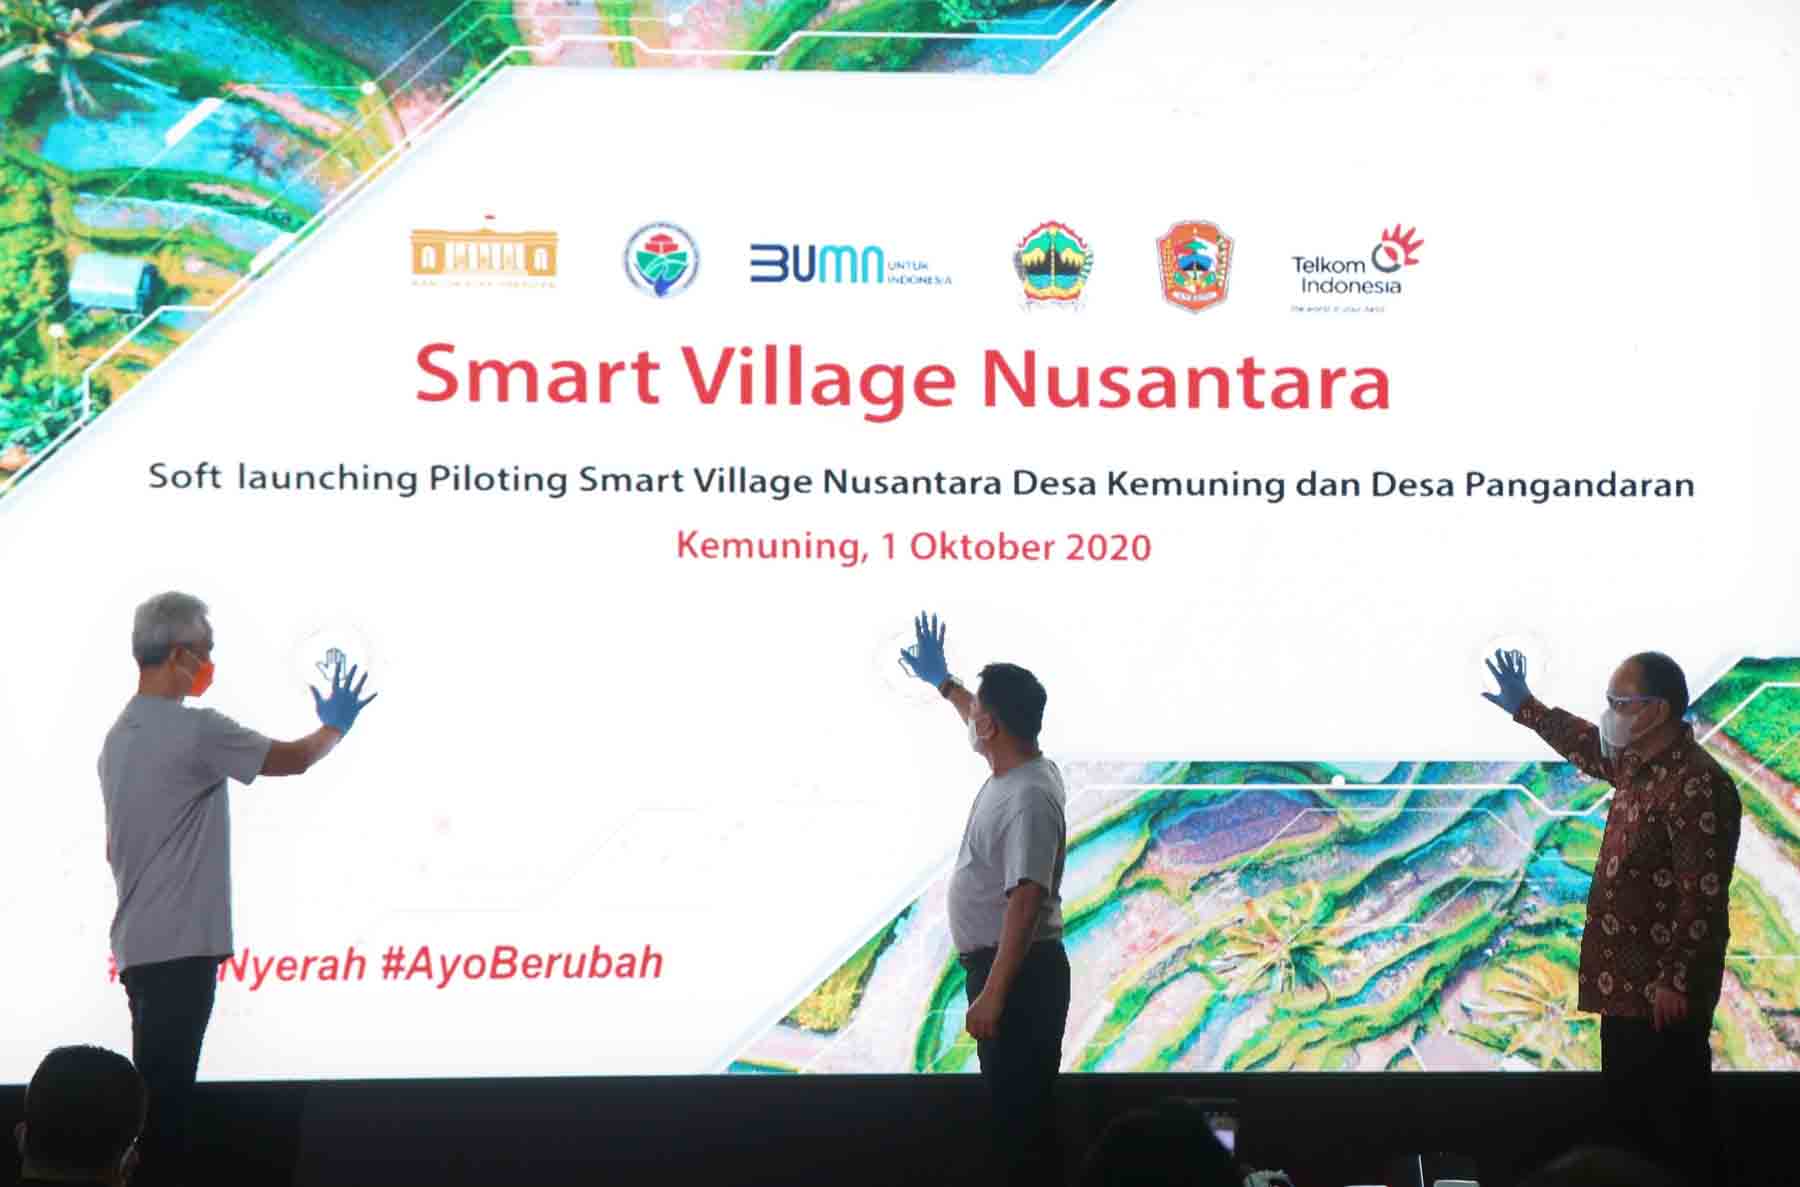 Dukung Digitalisasi dan Perkembangan Ekonomi Desa, Telkom Hadirkan Smart Village Nusantara